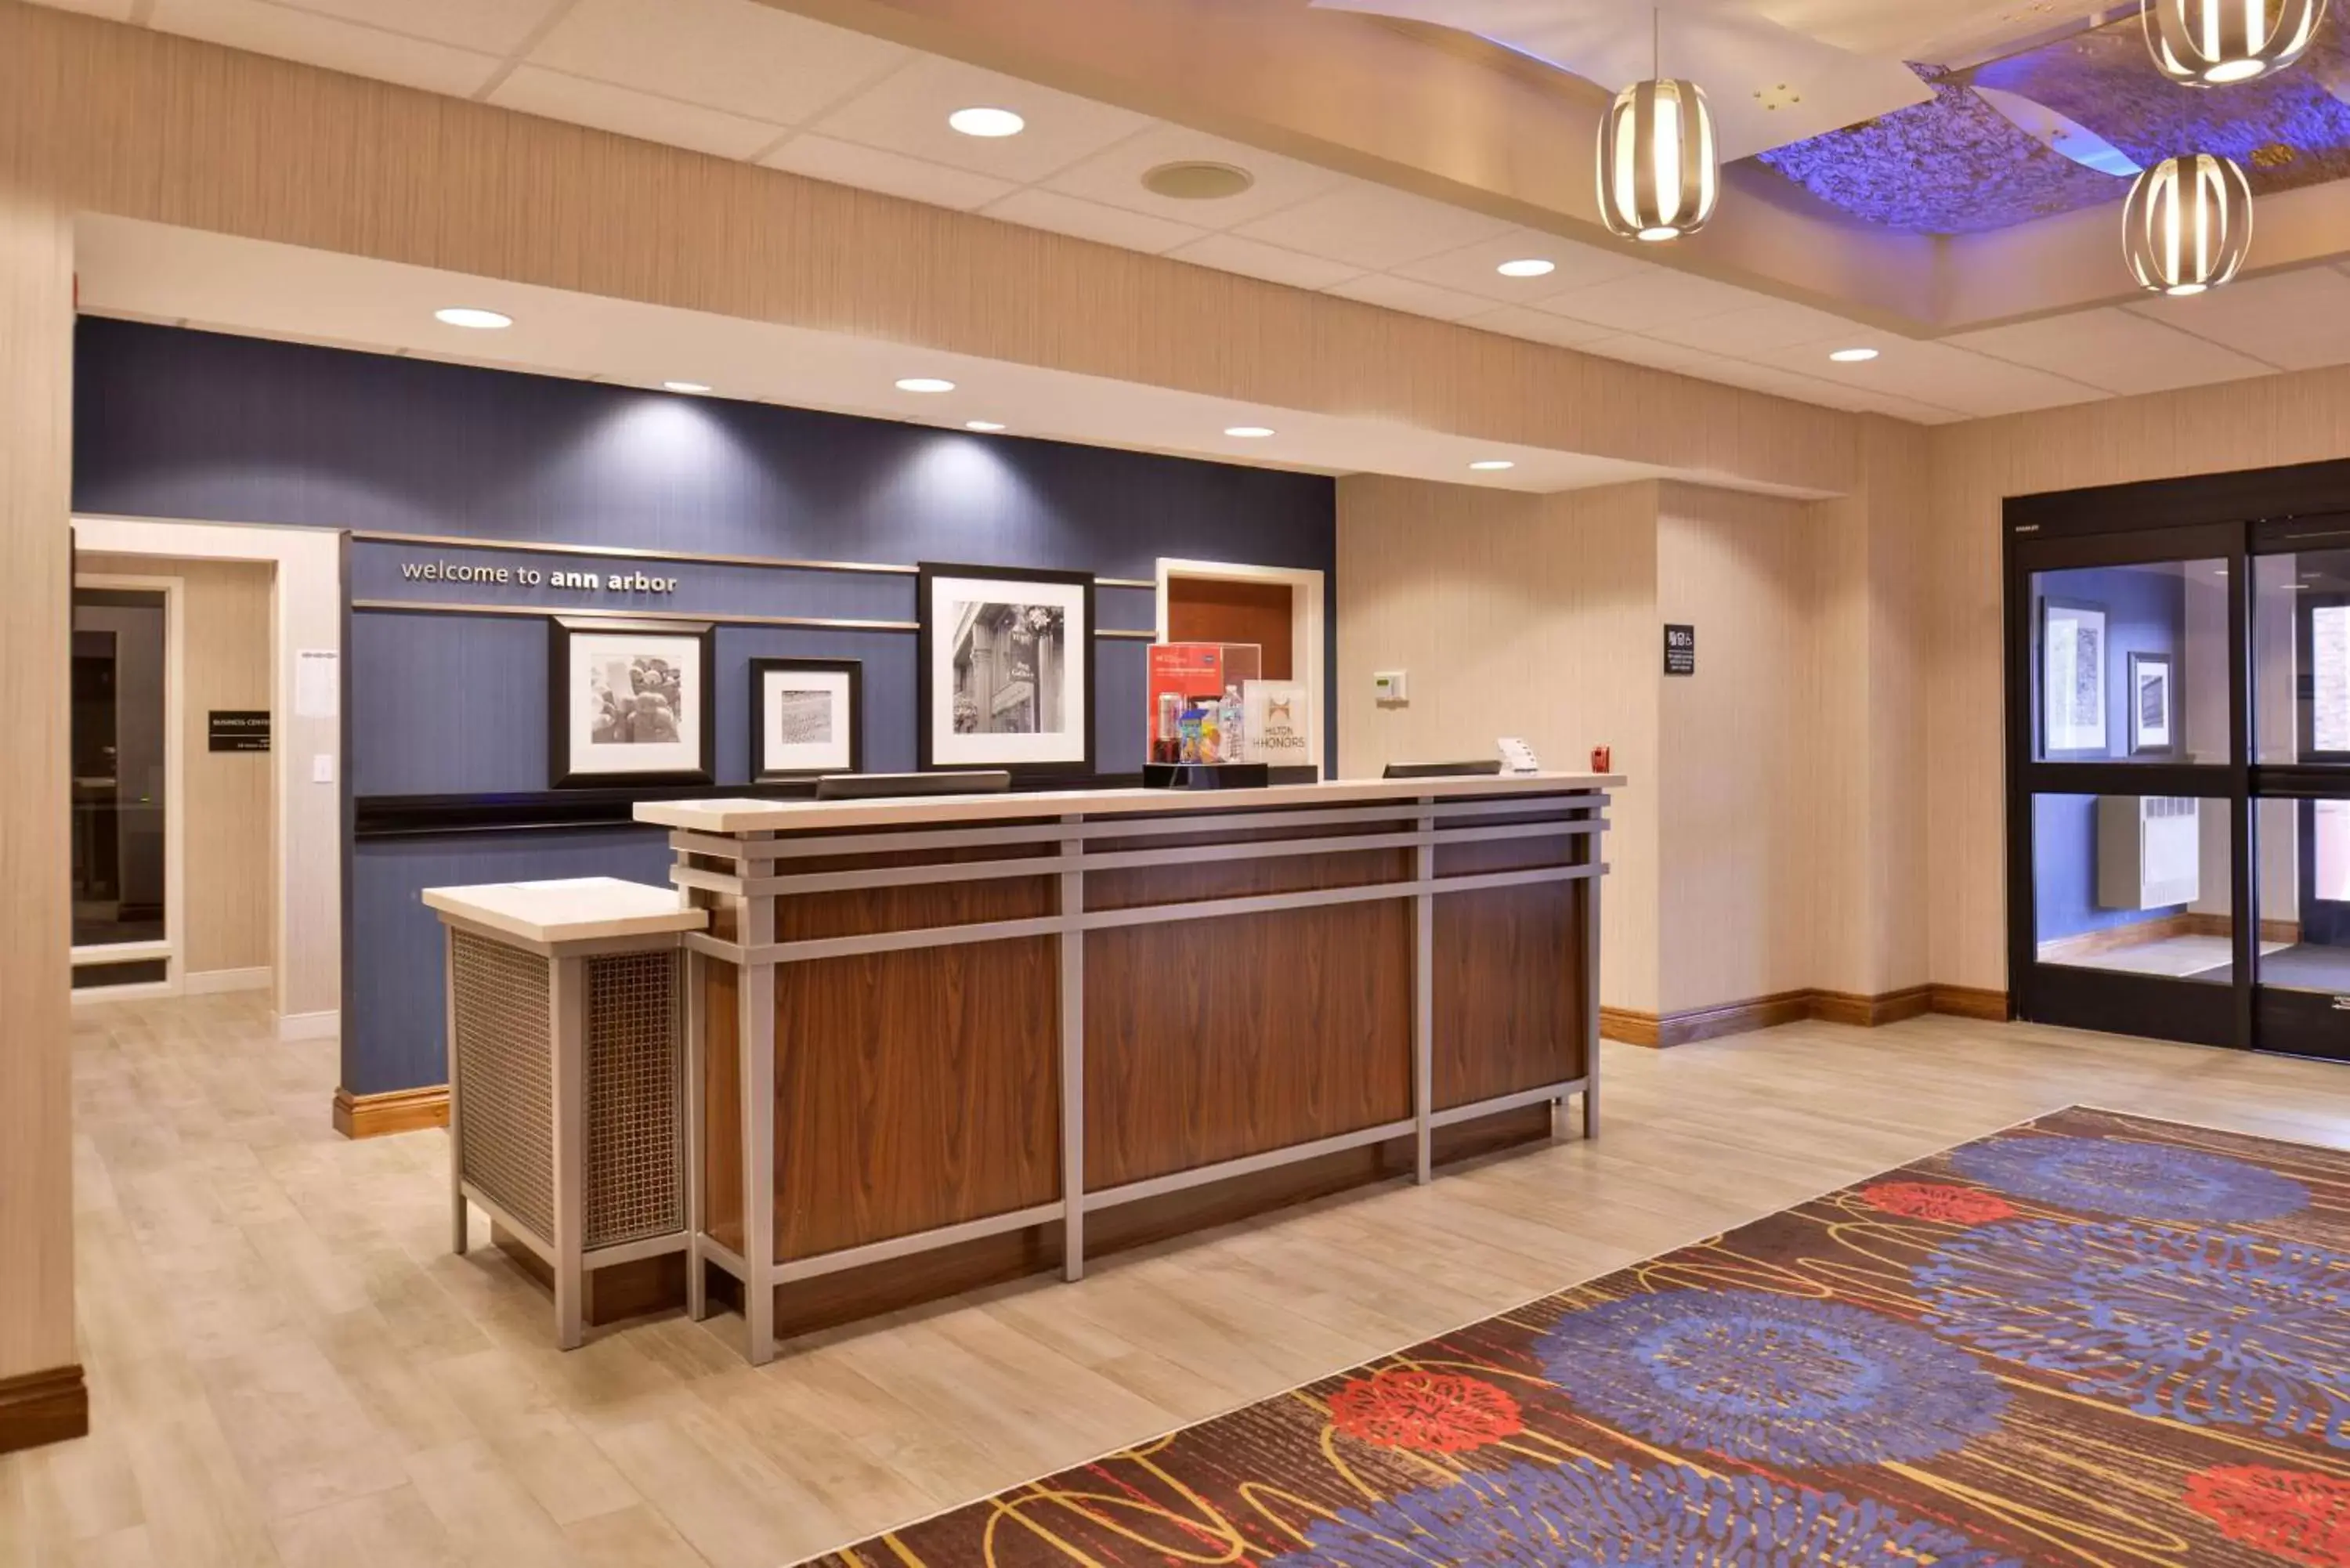 Lobby or reception, Lobby/Reception in Hampton Inn & Suites Ann Arbor West